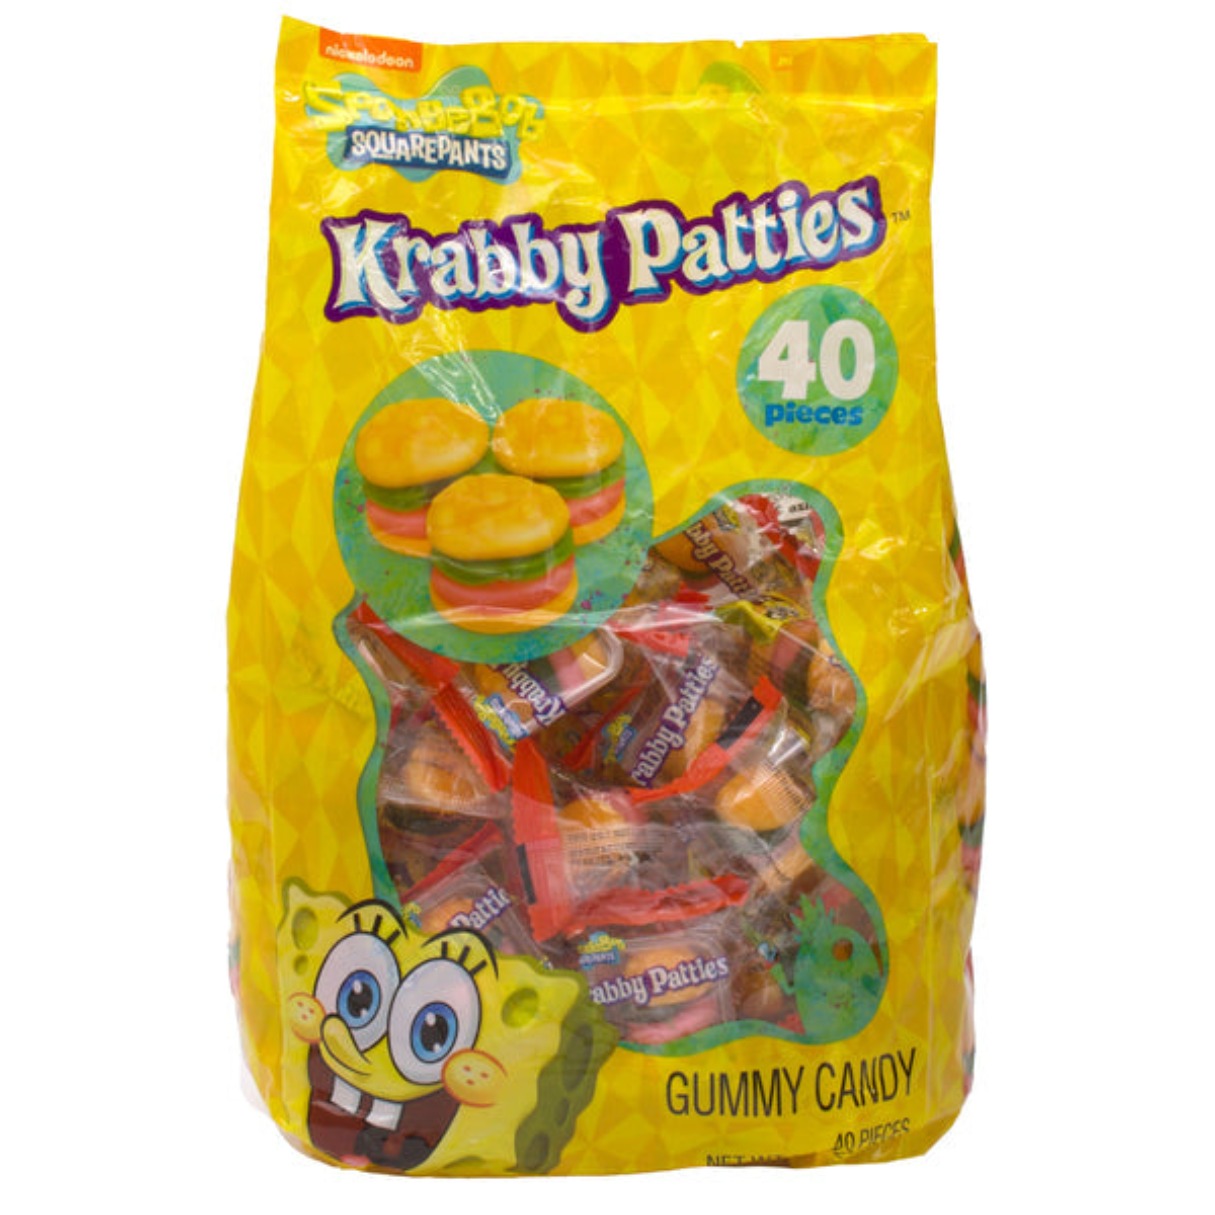 SpongeBob Krabby Patties Original Gummy Candy 9.52oz